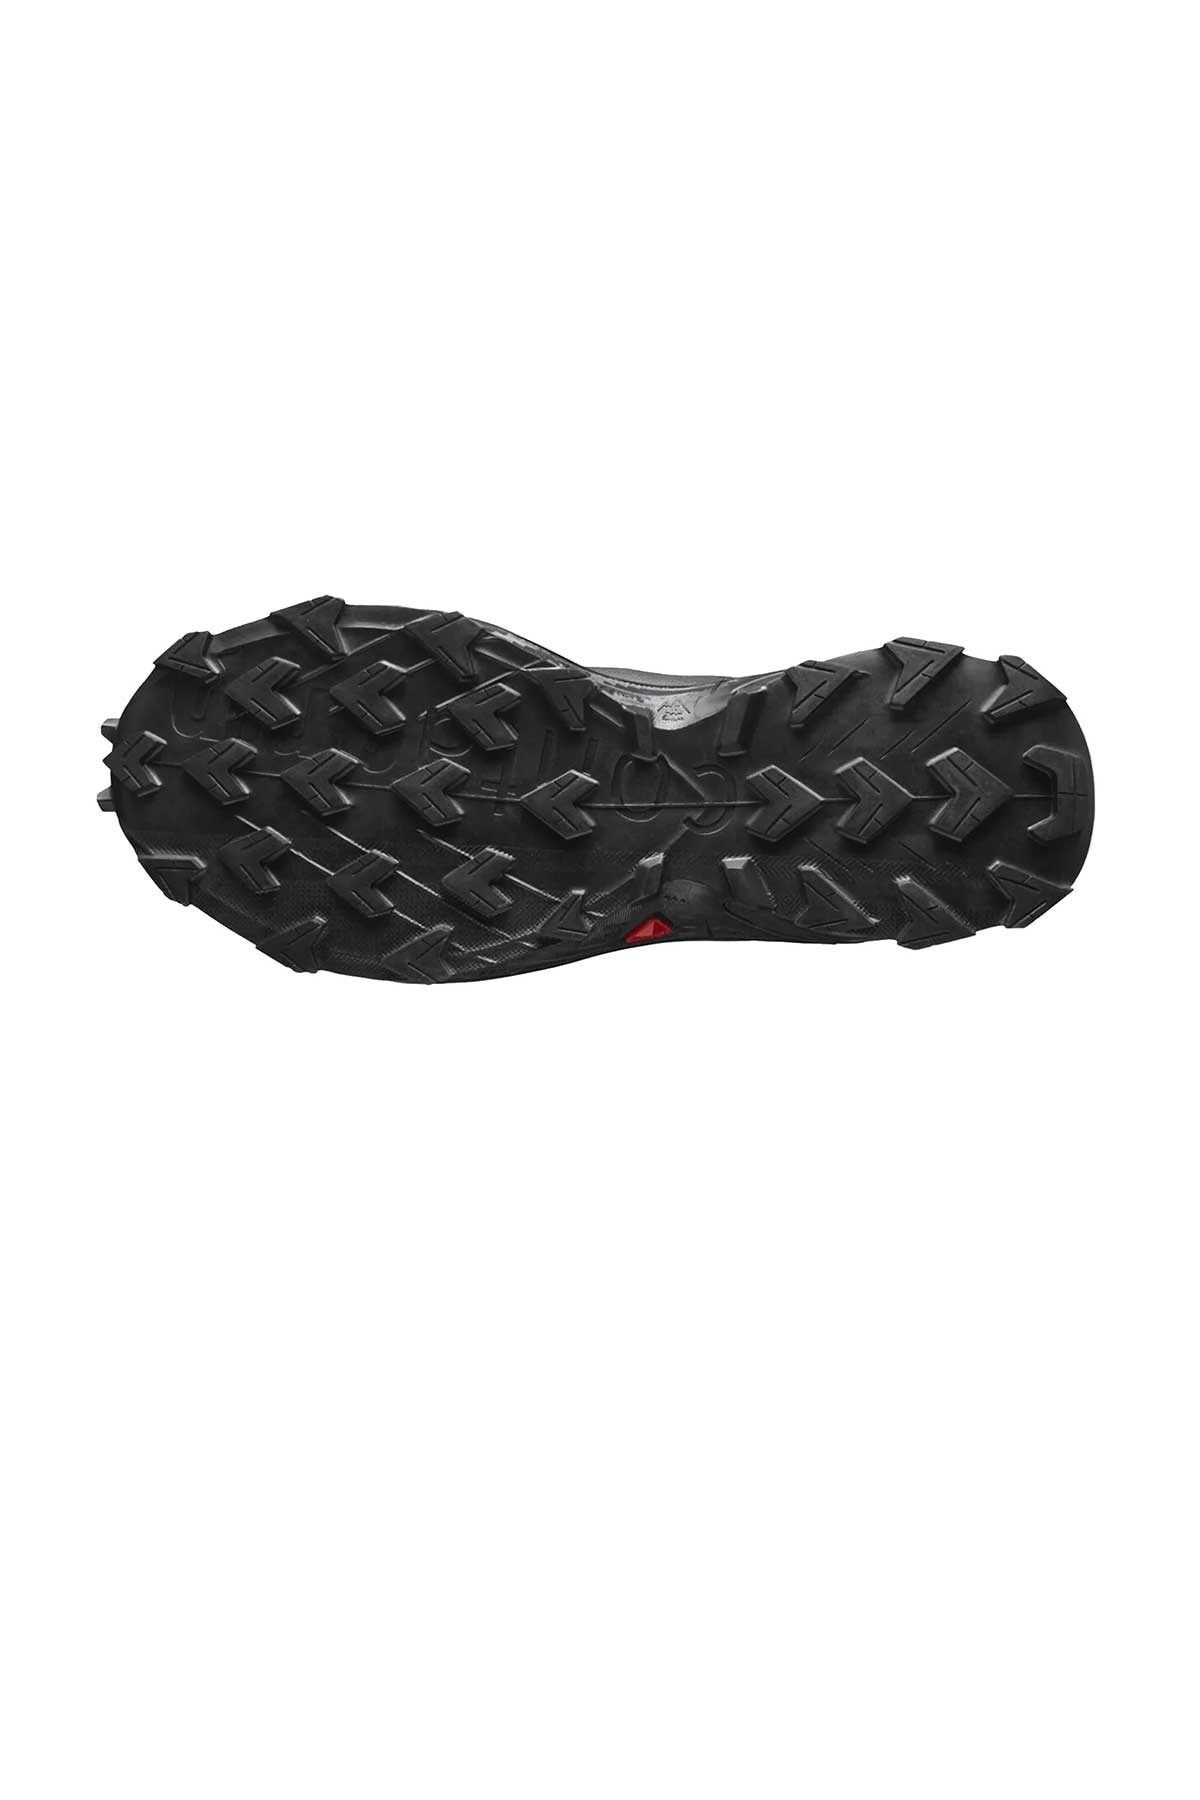 Salomon Supercross 4 Kadın Outdoor Ayakkabı L41737400